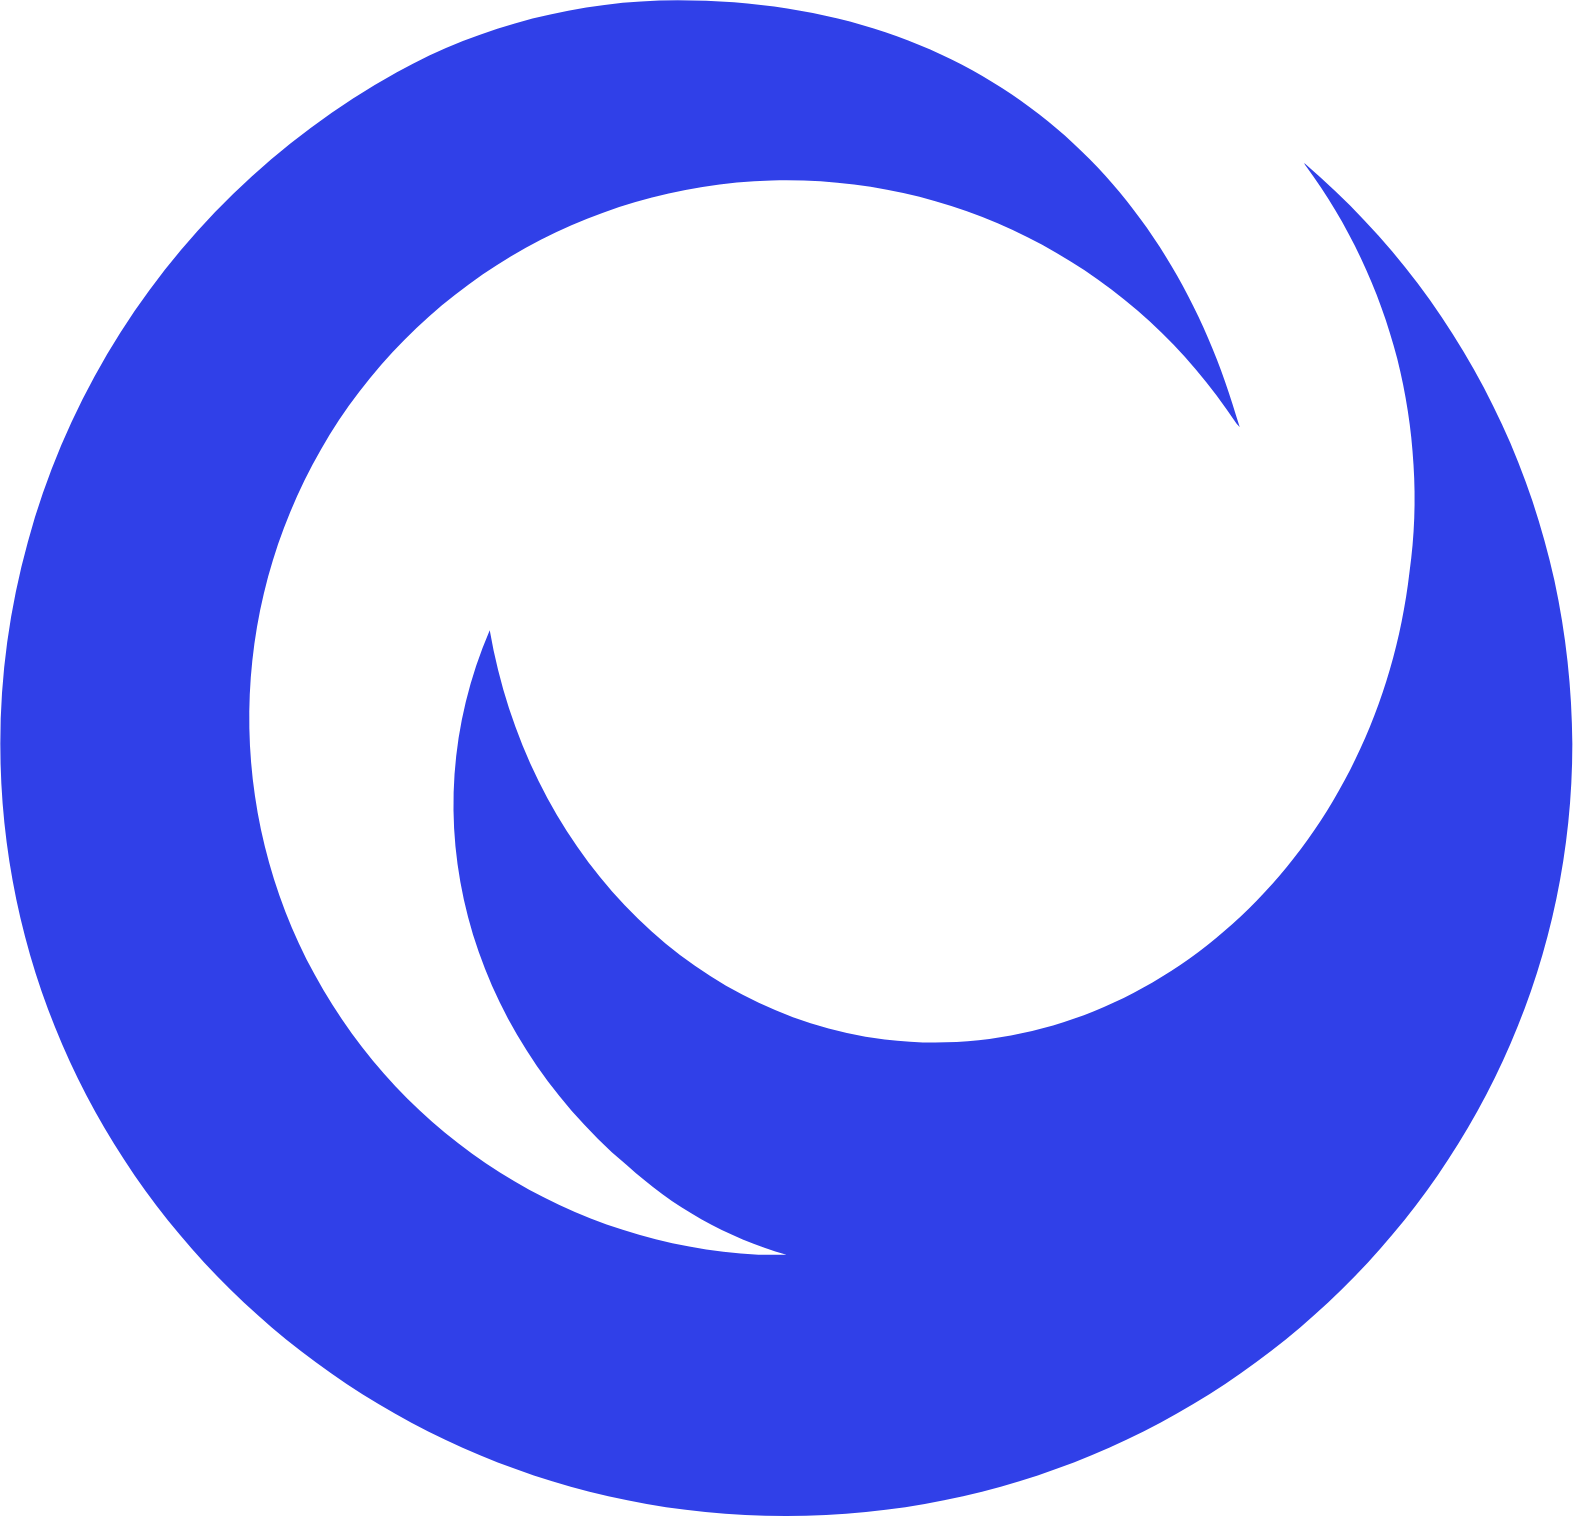 ON24 logo (transparent PNG)